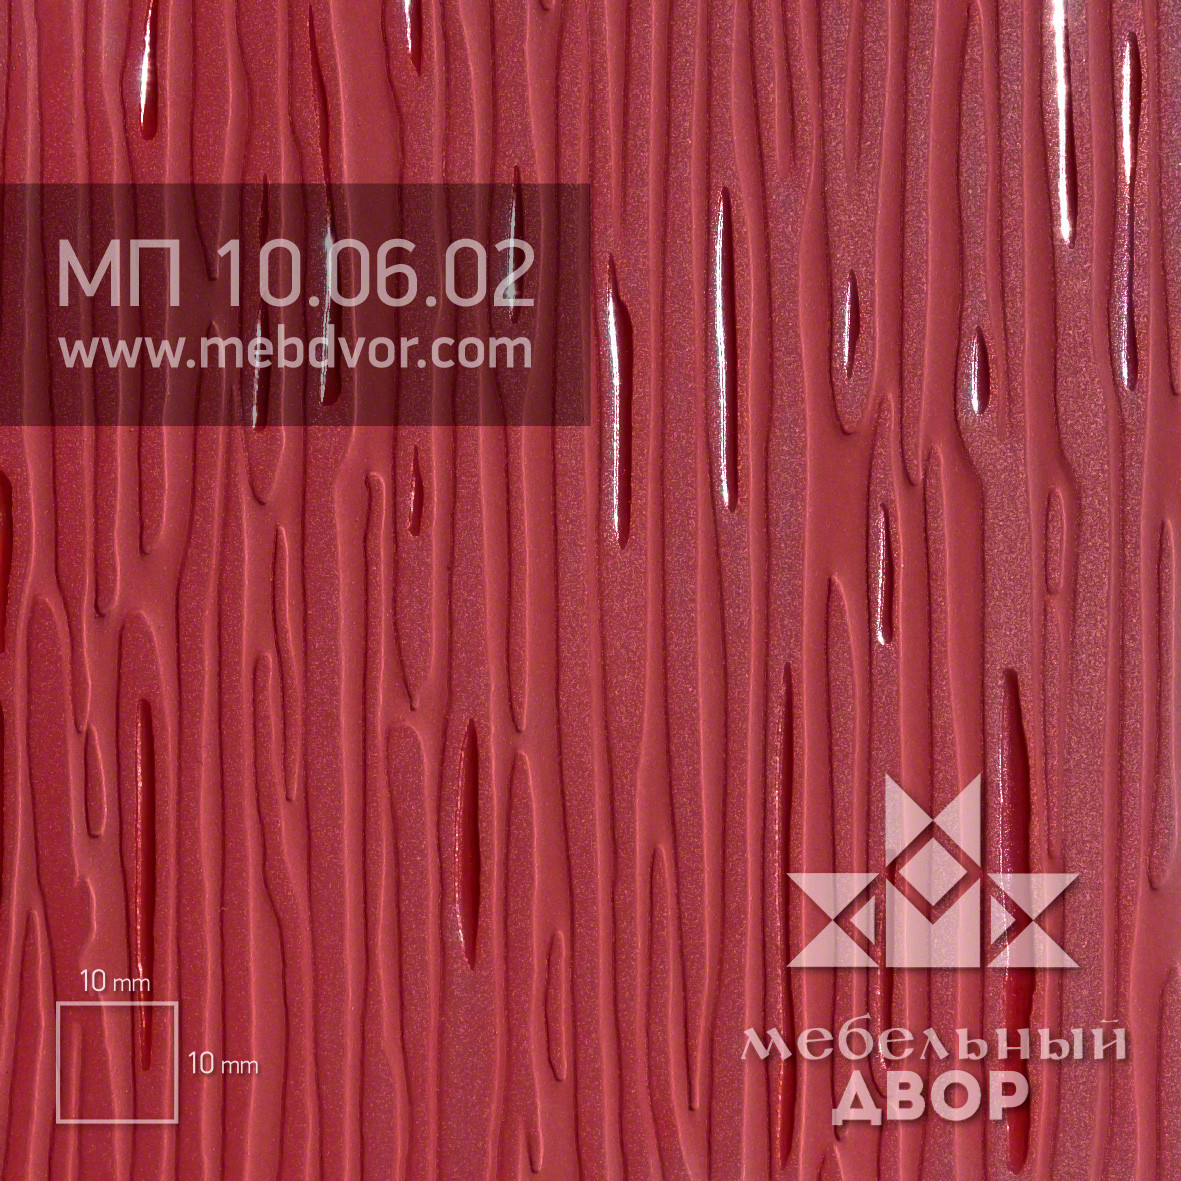 Пластик HPL МП 10.06.02 (бургундский текстура капли дождя)